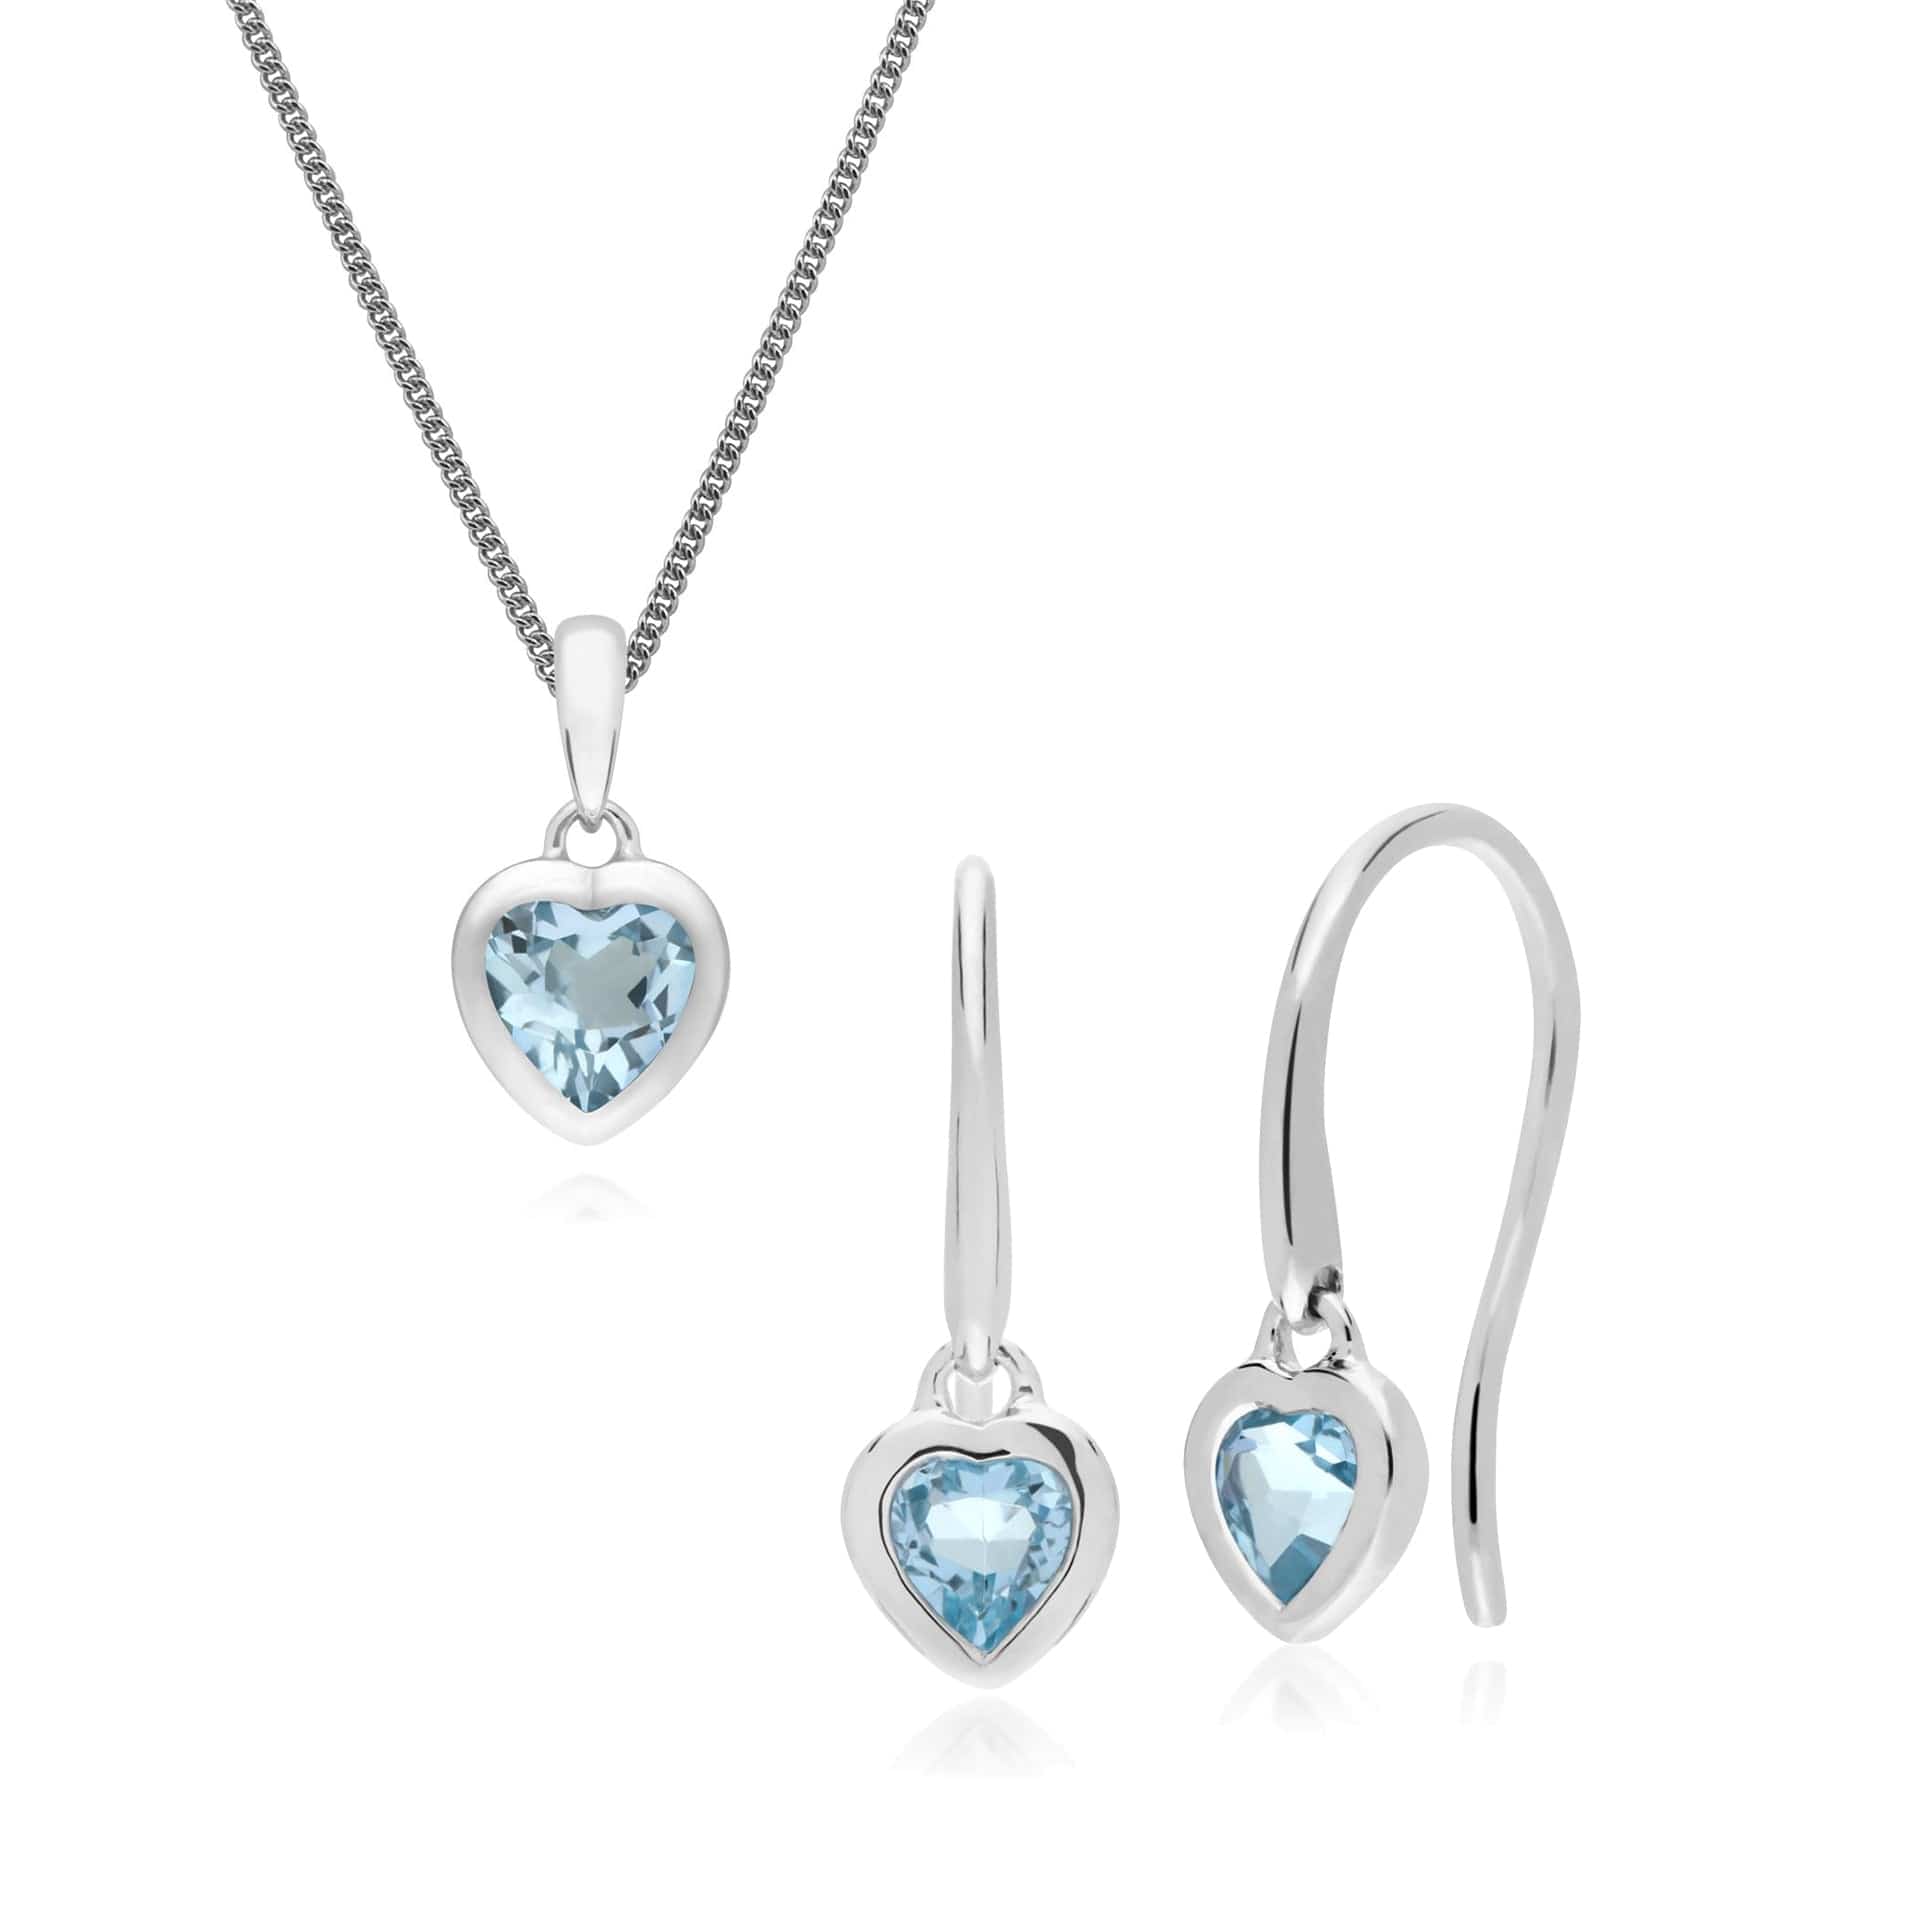 270E026202925-270P028702925 Classic Heart Blue Topaz Drop Earrings & Pendant Set in 925 Sterling Silver 1